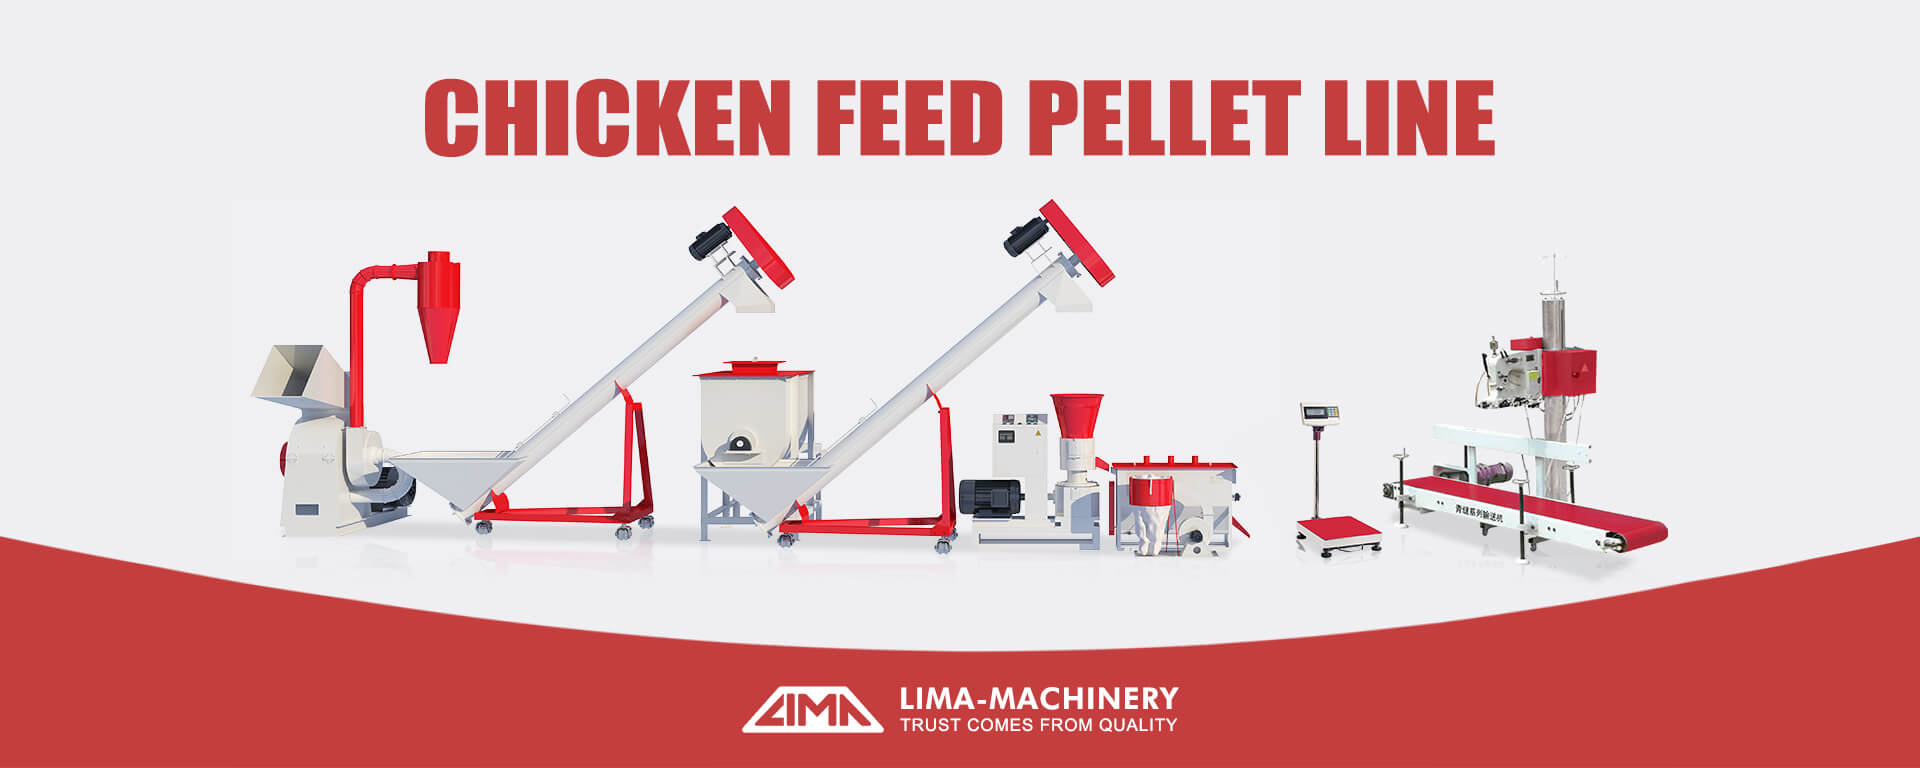 Livestock feed pellet line